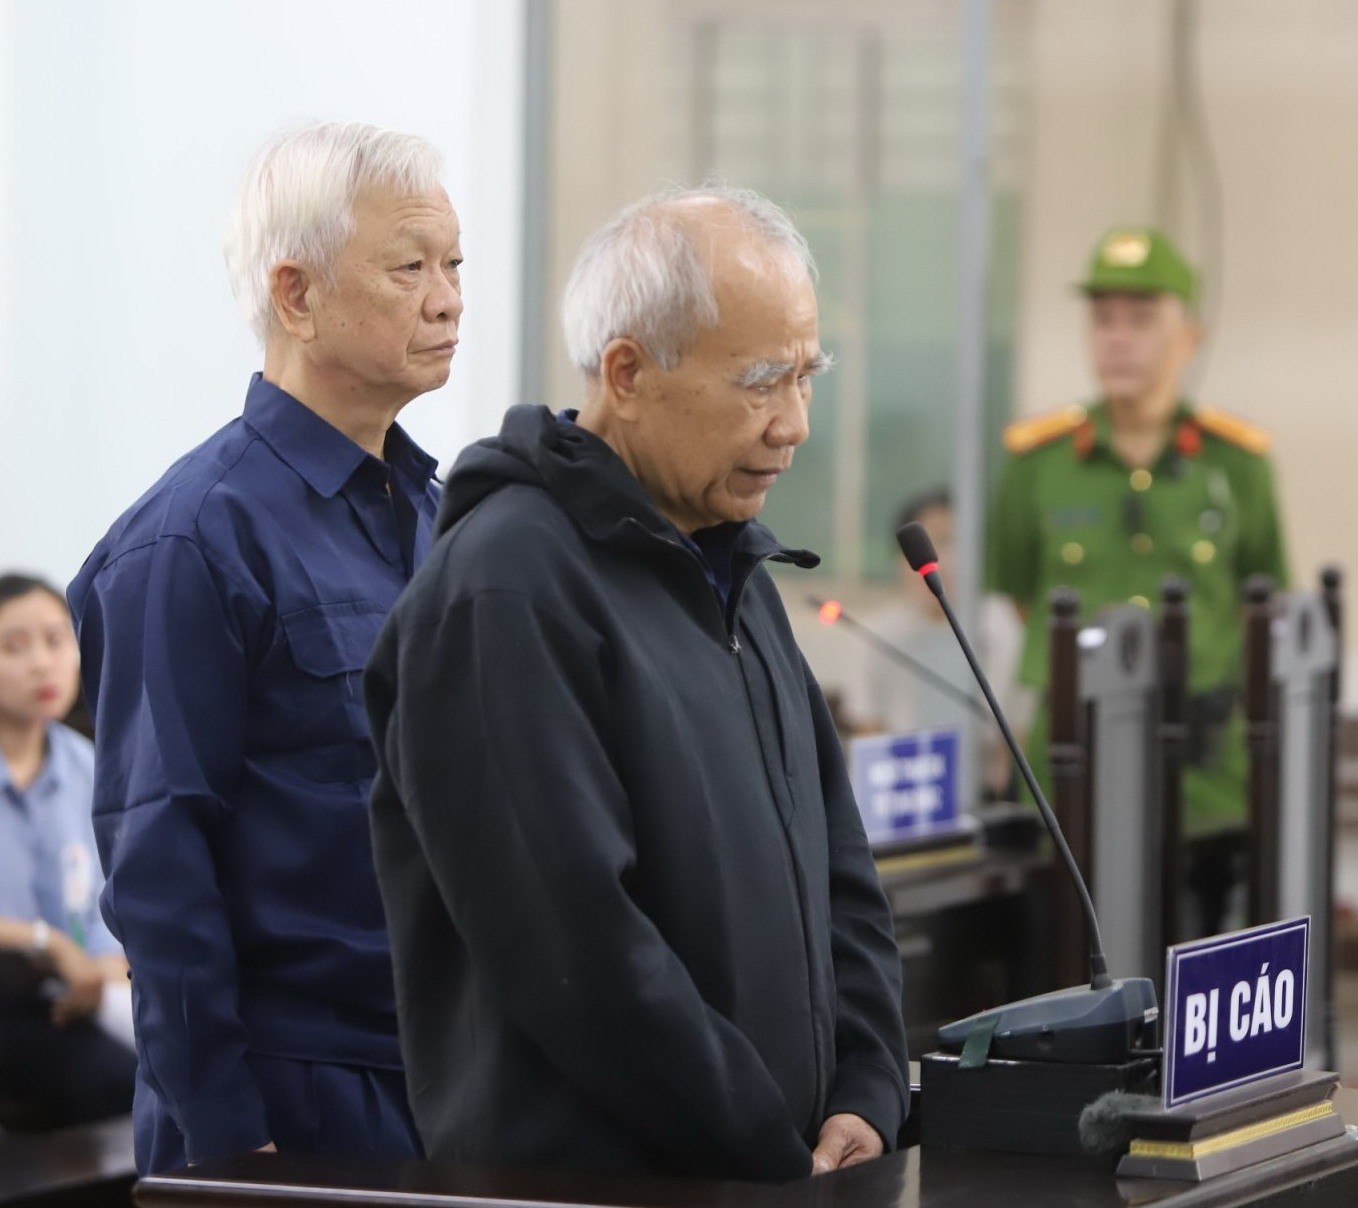 An ninh - Hình sự - Cựu Chủ tịch tỉnh Khánh Hòa Nguyễn Chiến Thắng tiếp tục bị truy tố